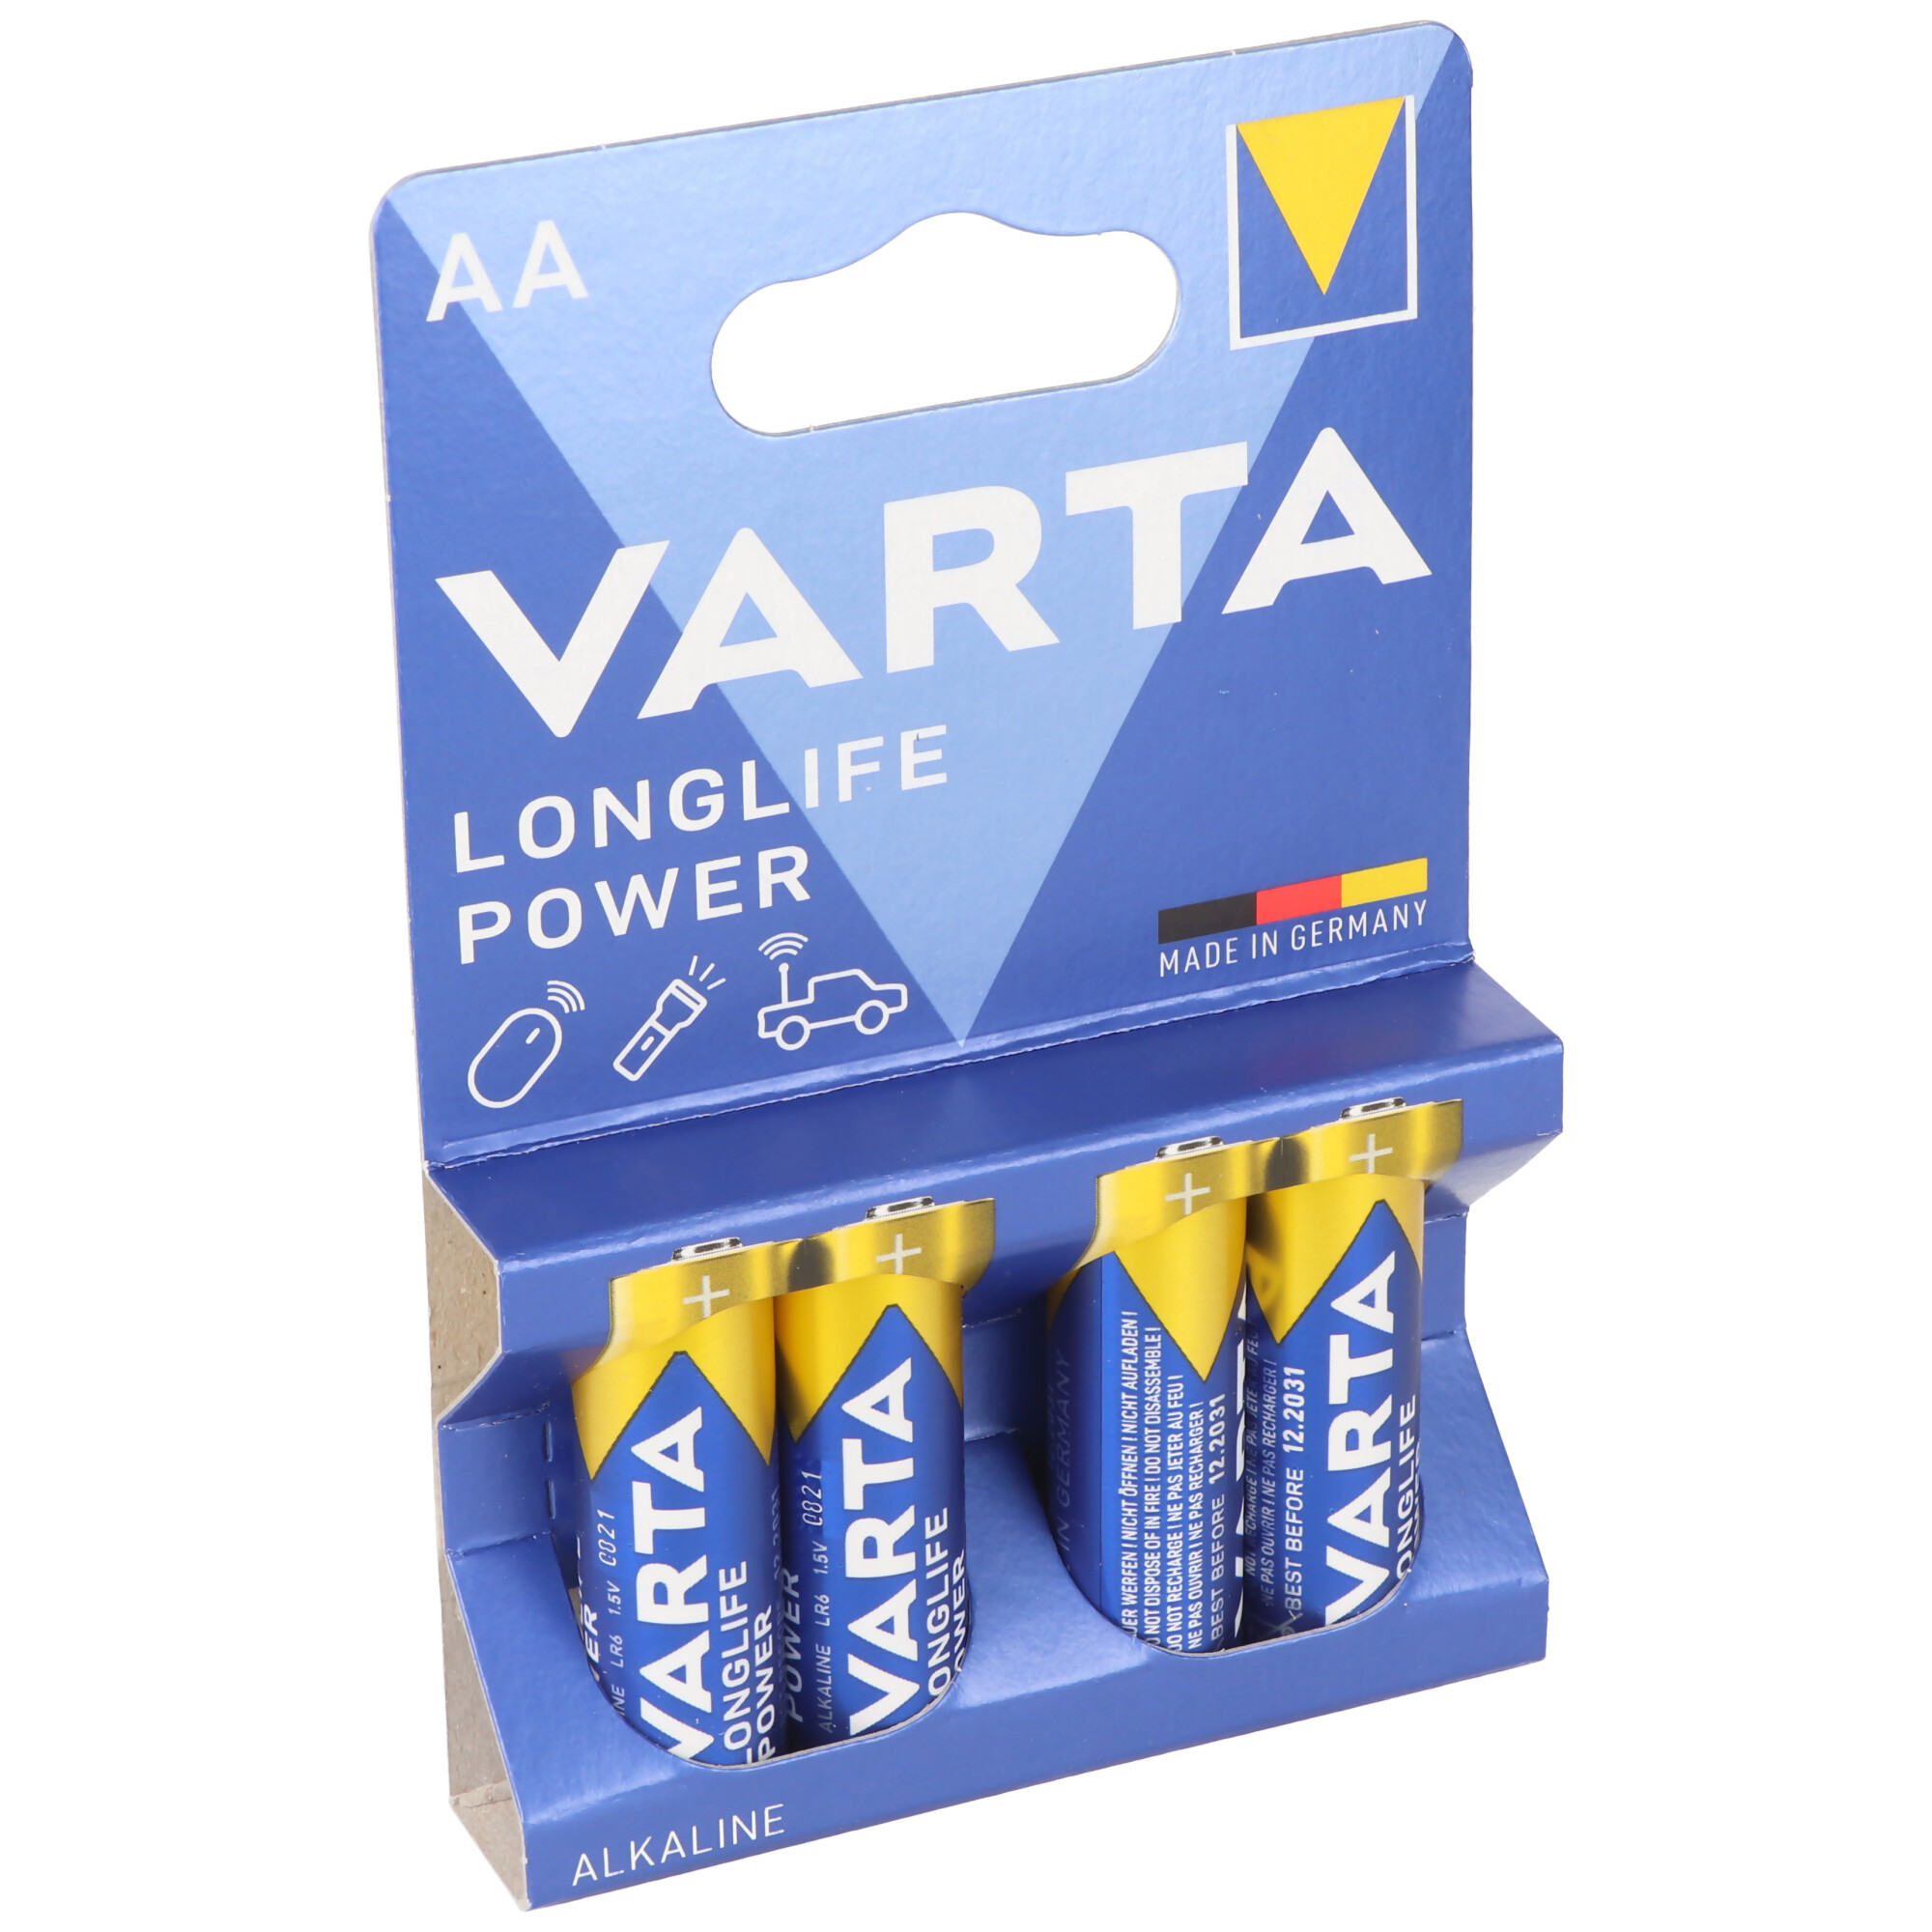 Varta Longlife Power (ehem. High Energy) 4906 Mignon AA Batterien 4er Blister Made in Germany